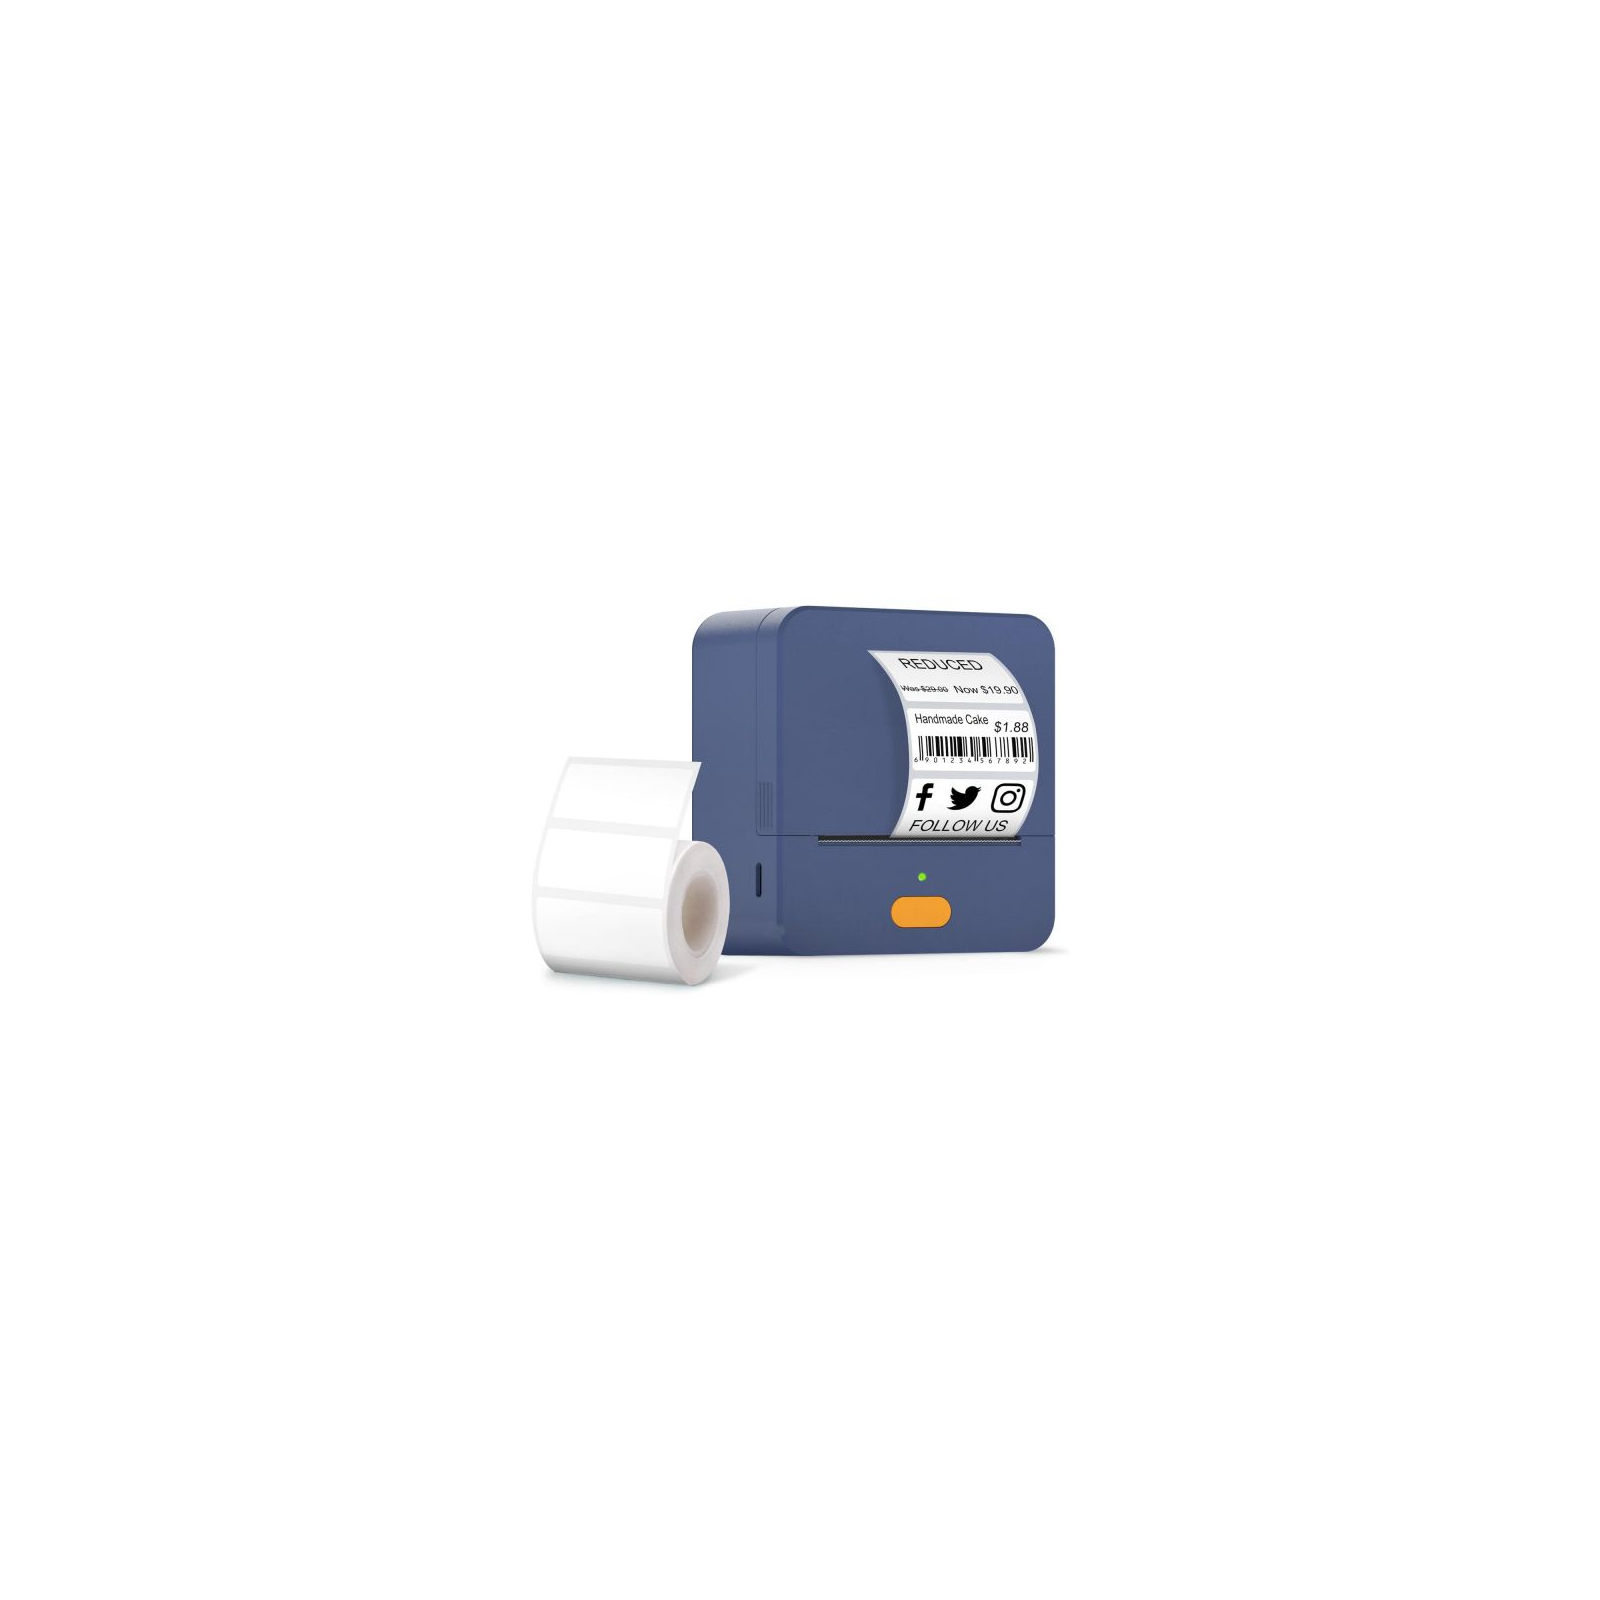 Принтер этикеток UKRMARK UP1BL bluetooth, USB, синий (900773)